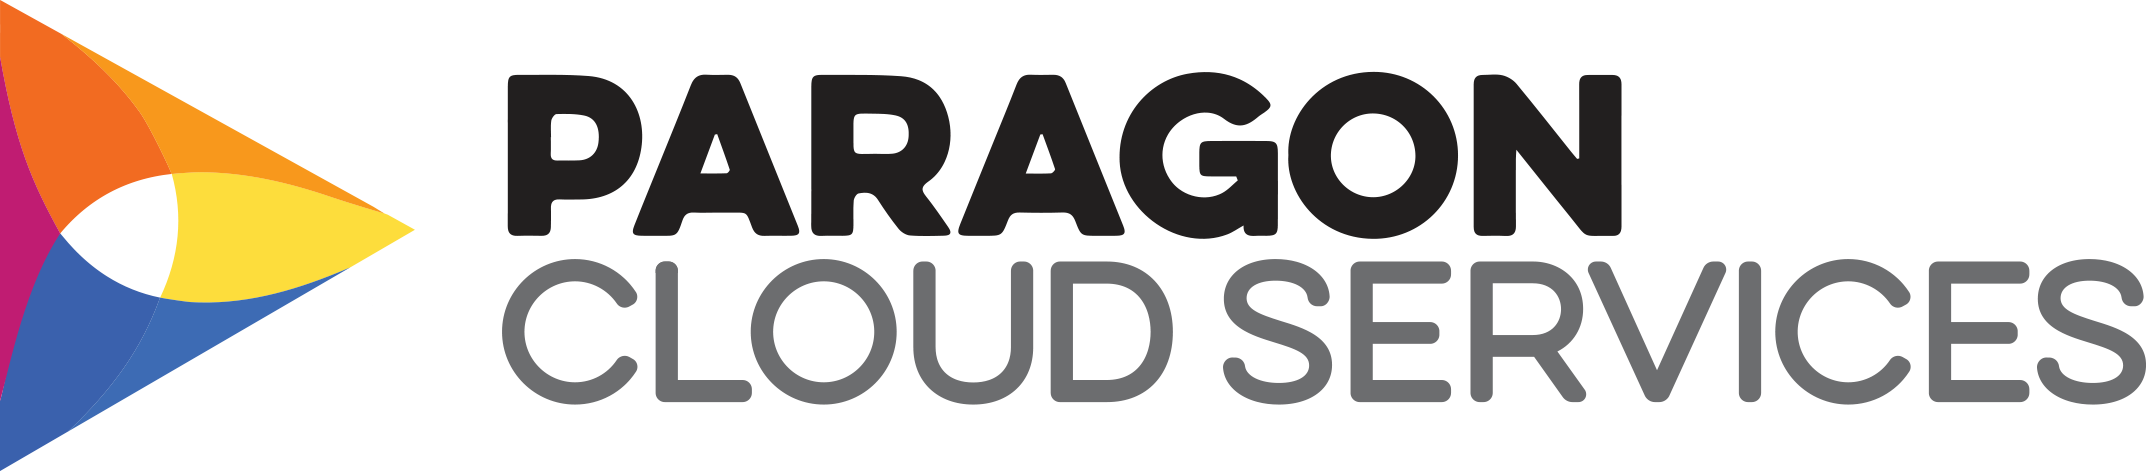 Paragon Cloud Services